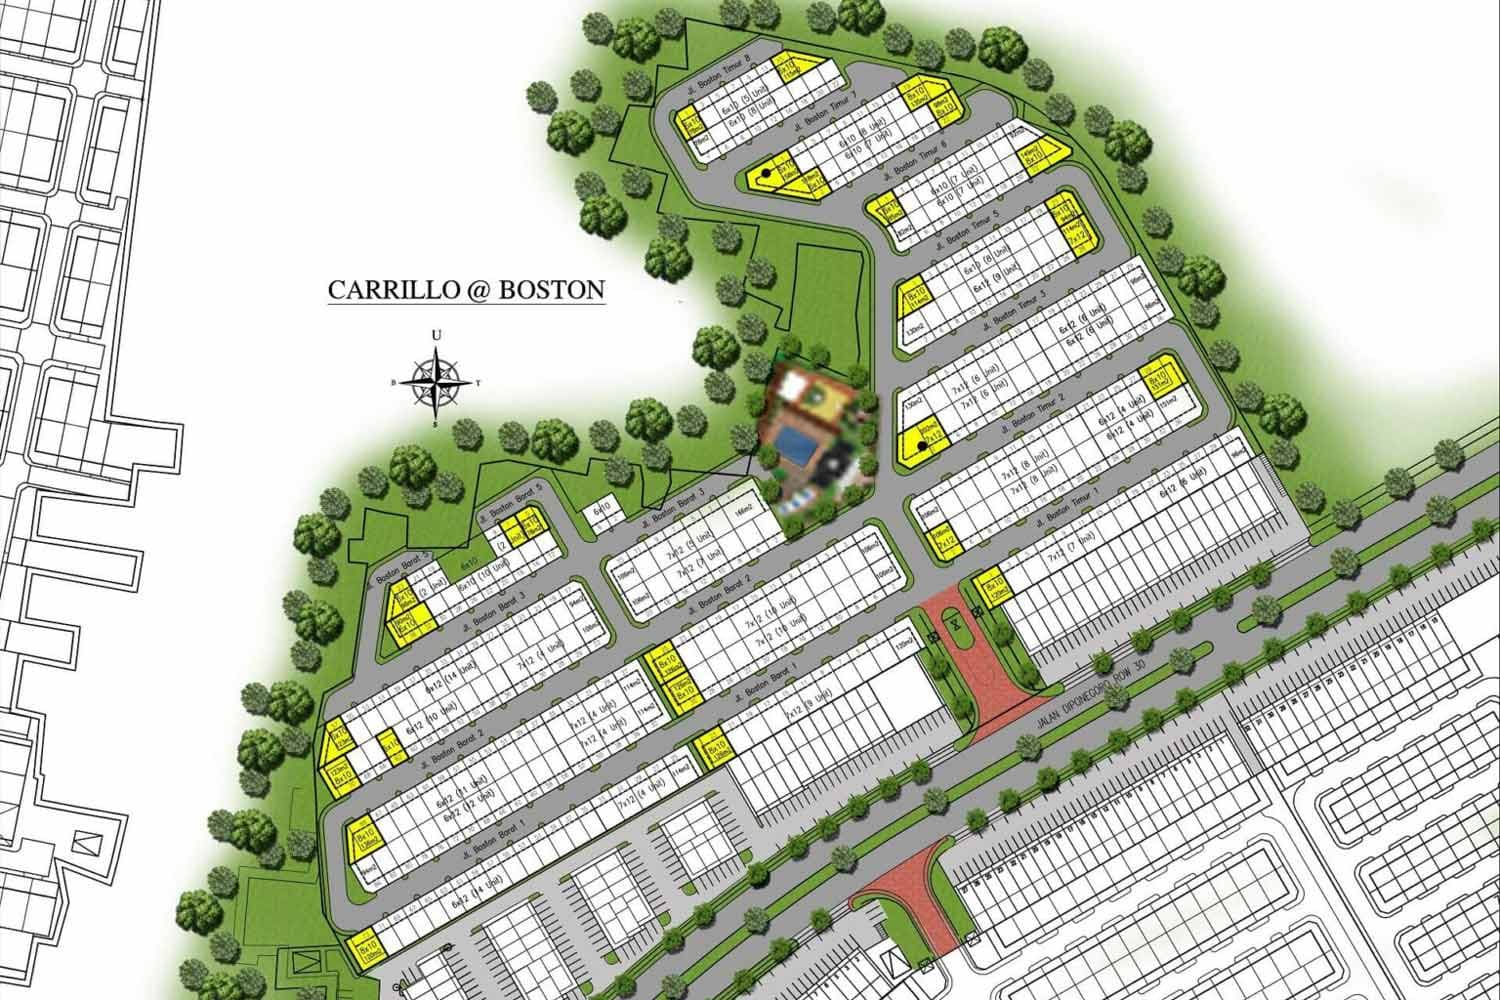 New Carrillo @Boston Village Siteplan